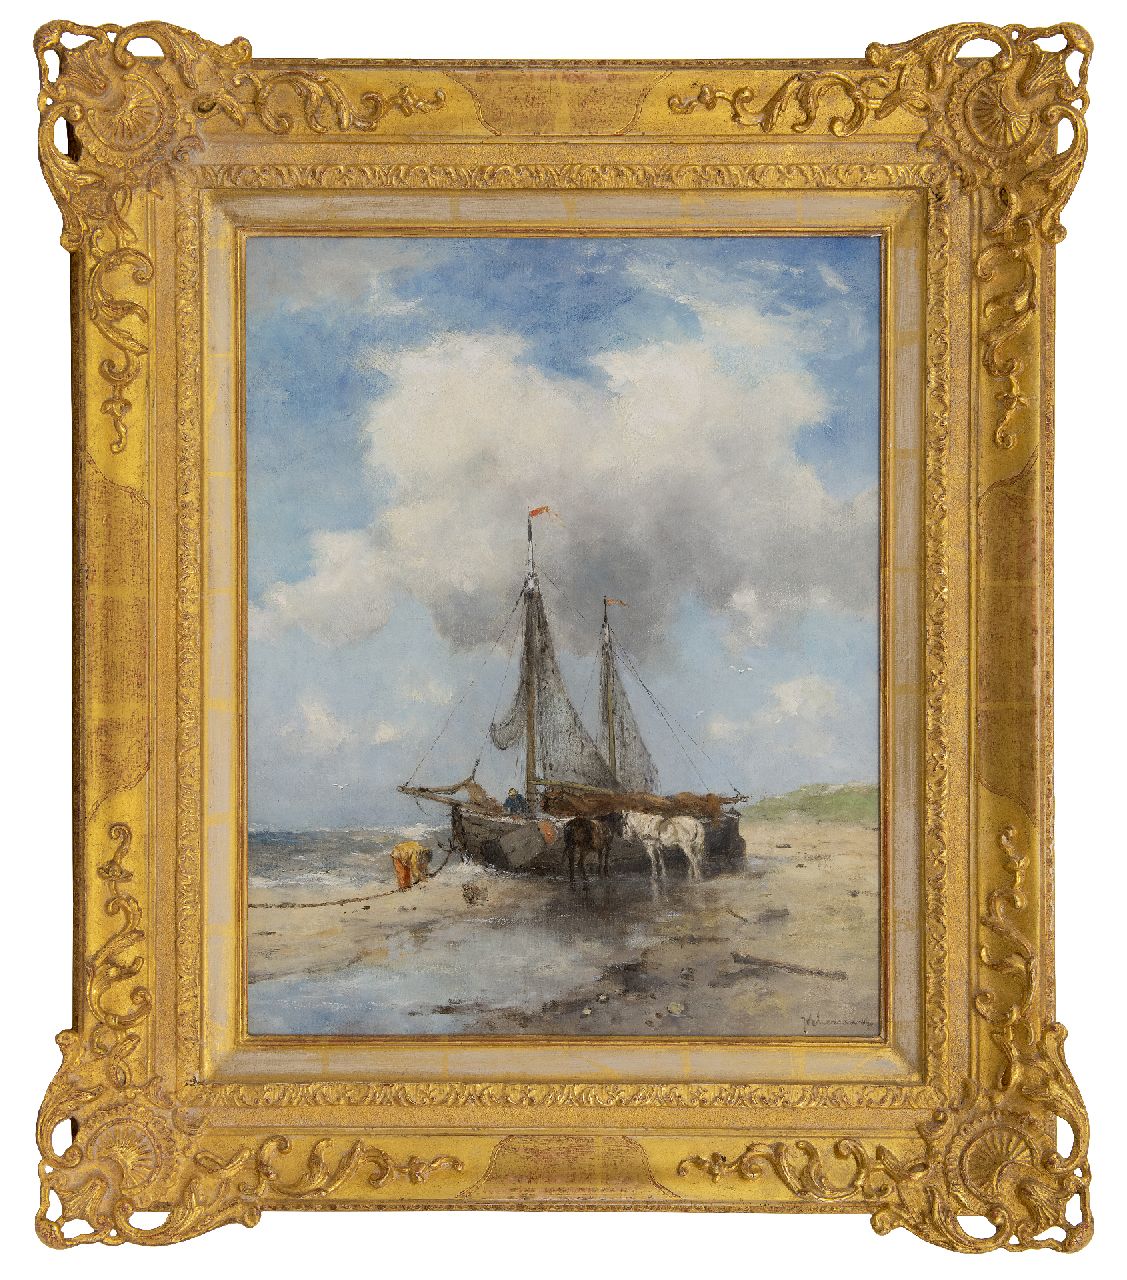 Scherrewitz J.F.C.  | Johan Frederik Cornelis Scherrewitz | Schilderijen te koop aangeboden | Bomschuiten op het strand, olieverf op doek 50,5 x 40,5 cm, gesigneerd rechtsonder